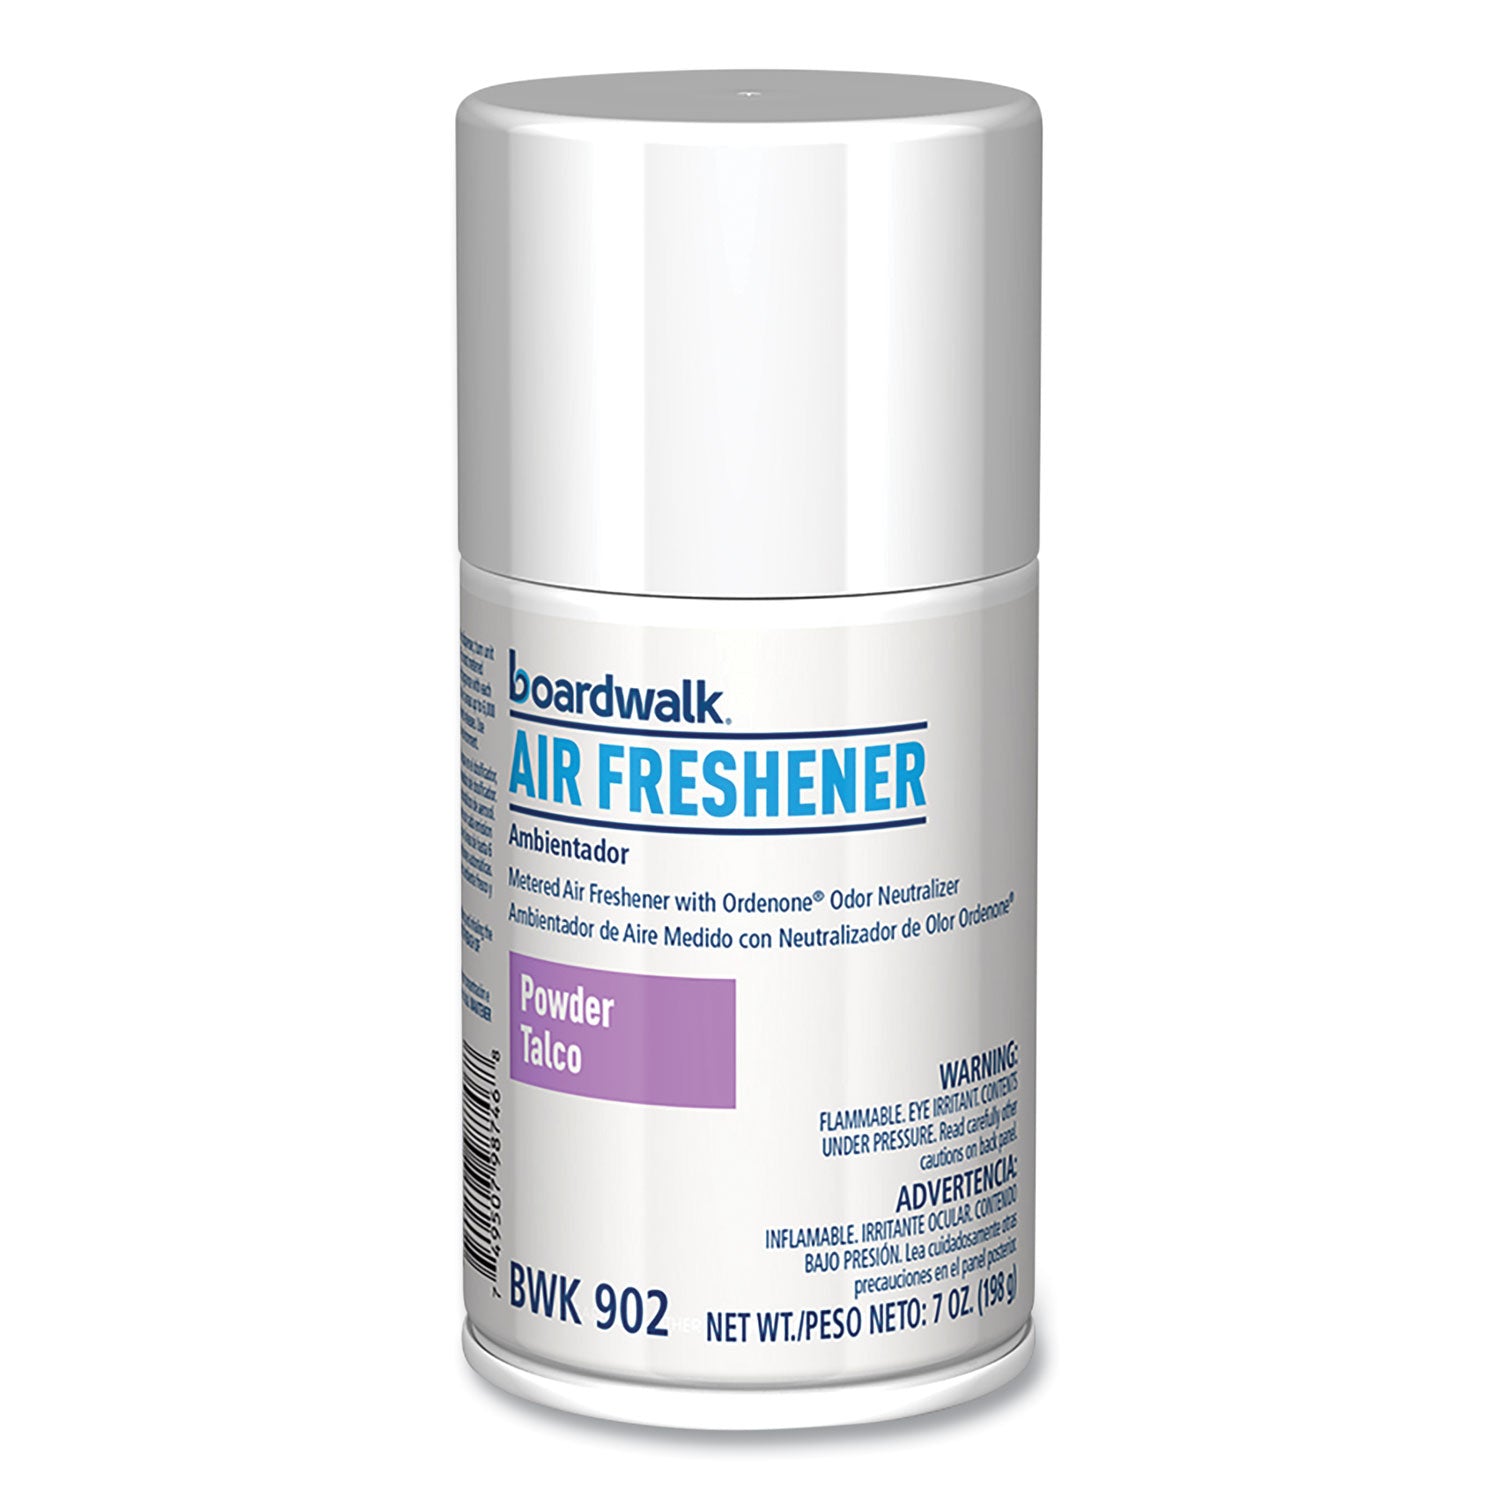 metered-air-freshener-refill-powder-mist-7-oz-aerosol-spray-12-carton_bwk902 - 3